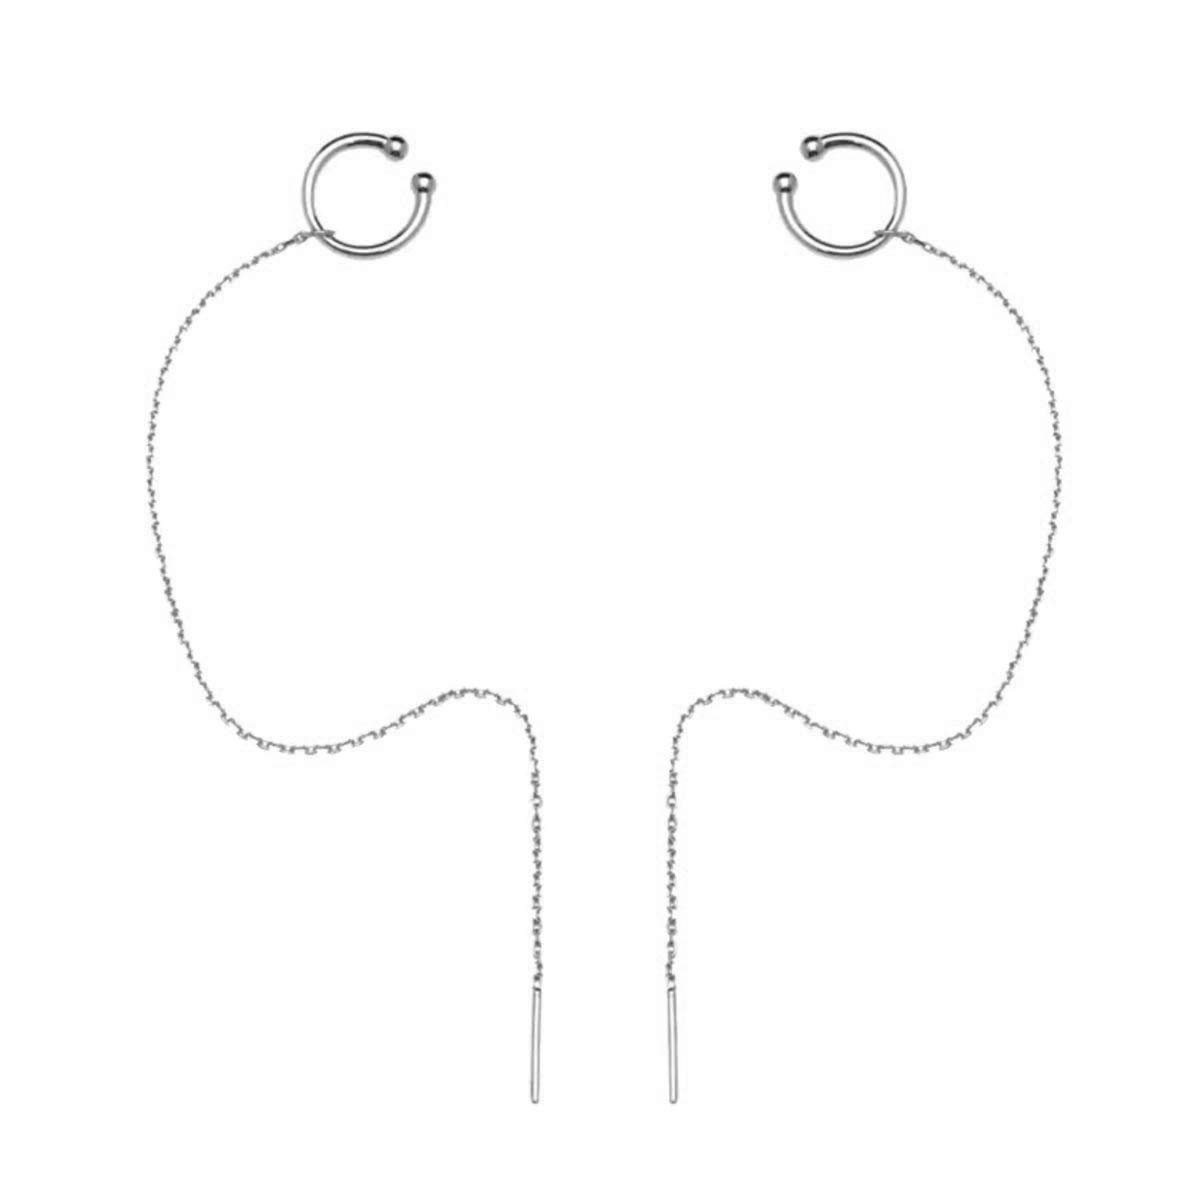 POCHUMIDUU Paar Ohrhänger 925 Sterling Silber Manschette Kette Ohrringe Wrap Quaste Ohrringe (2-tlg), für Frauen Teen Mädchen Crawler Ohrringe Muttertag Geschenk